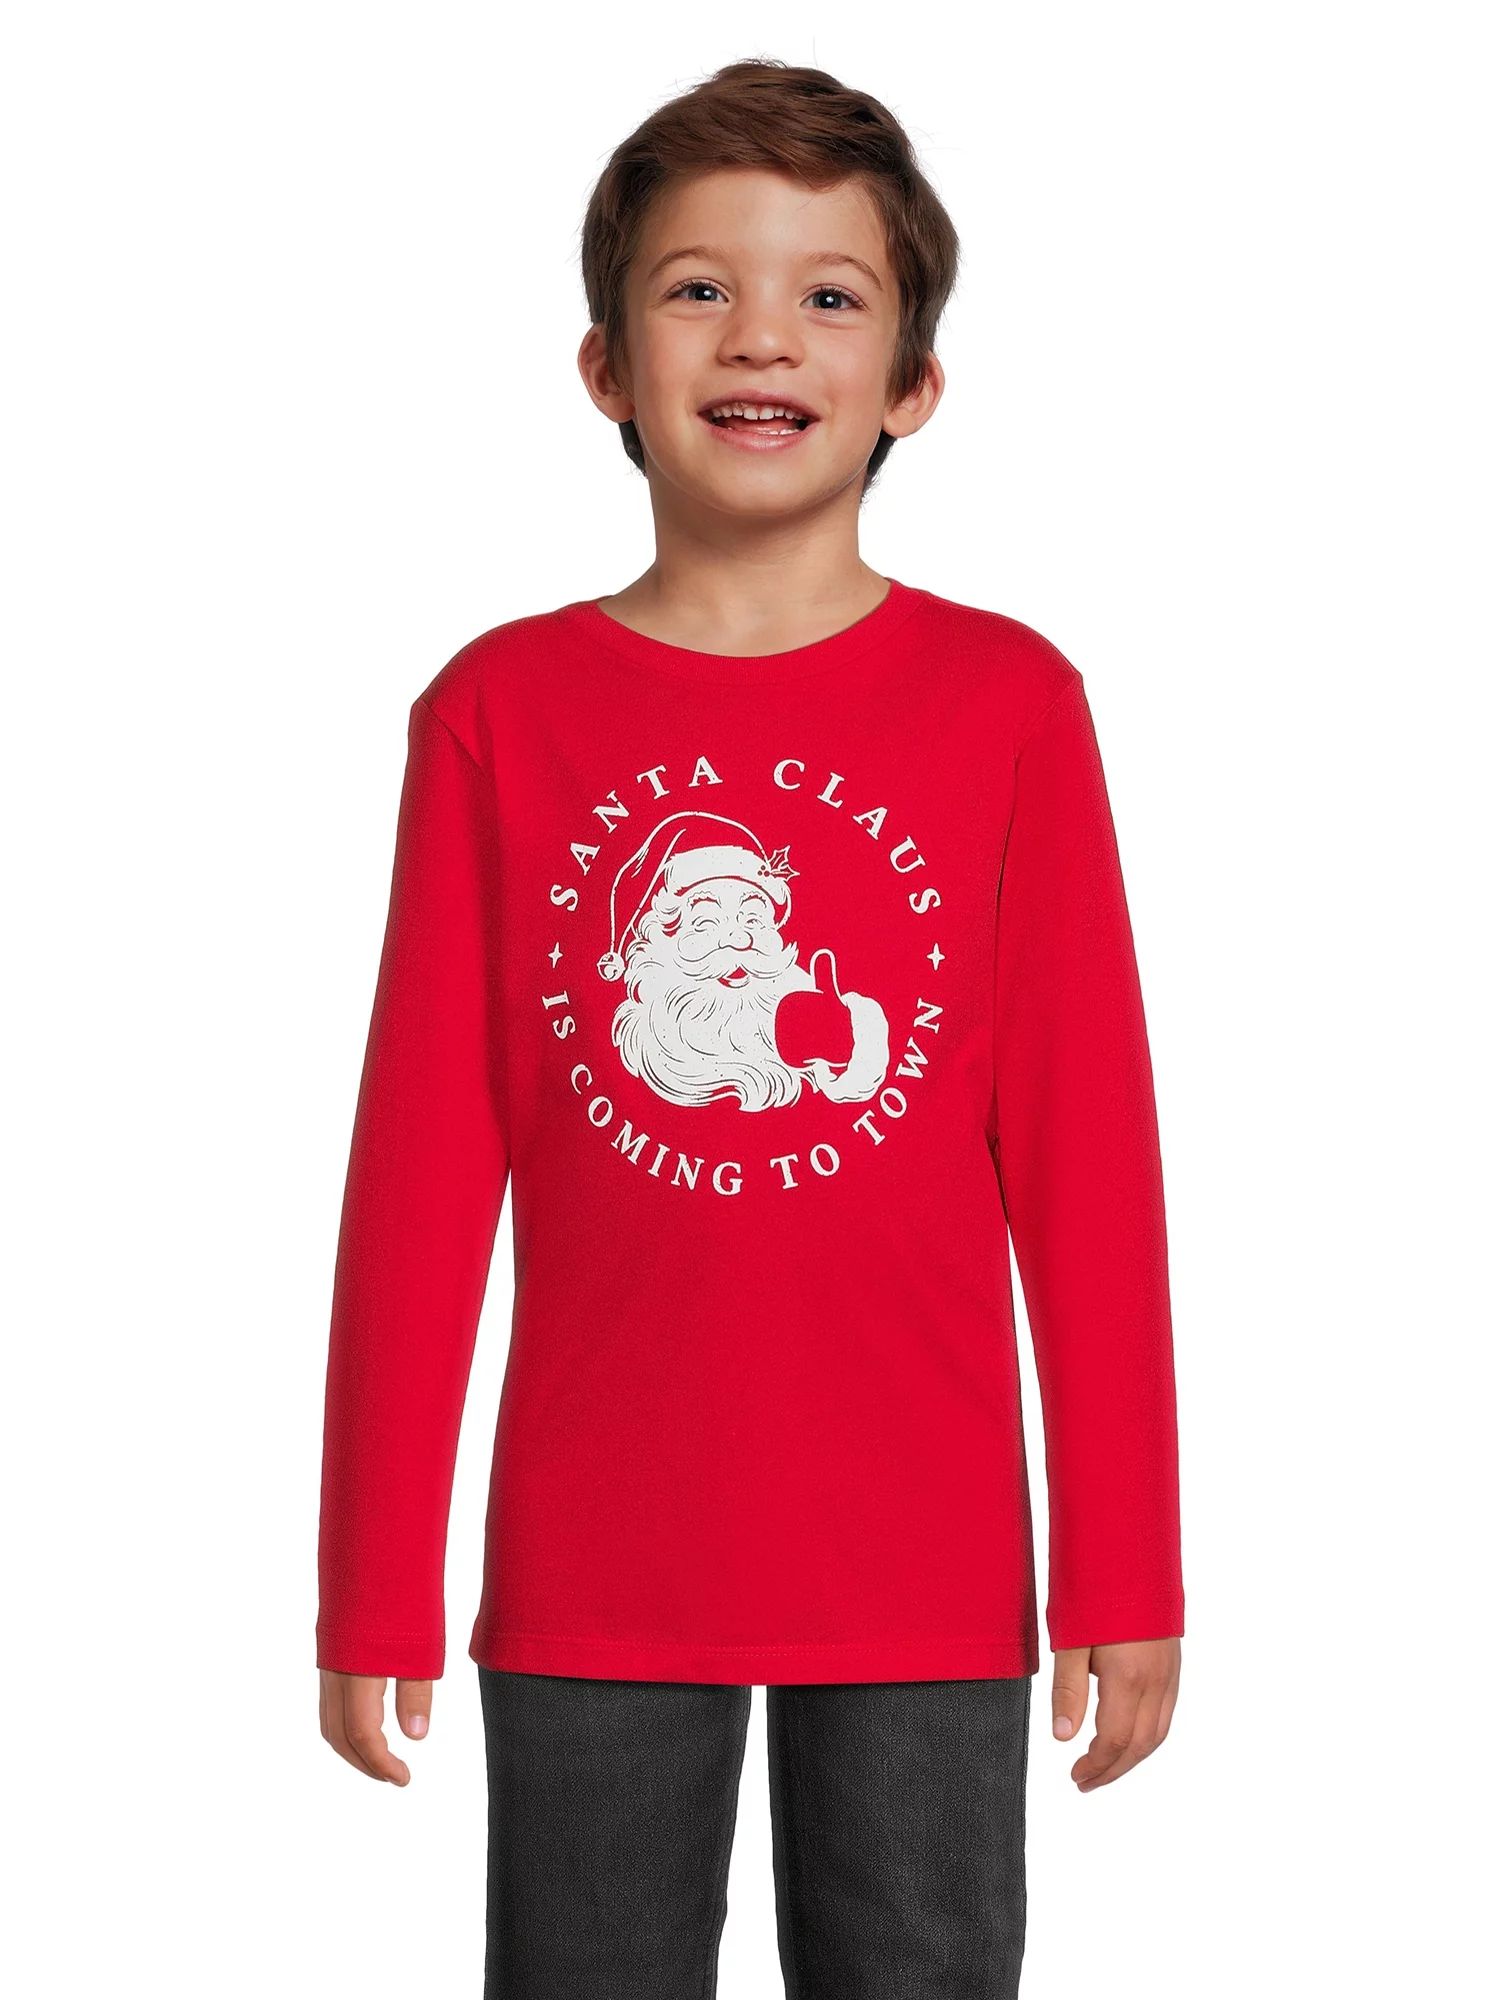 Holiday Time Boys Long Sleeve Christmas Graphic Tee Shirt, Sizes 4-18 & Husky | Walmart (US)